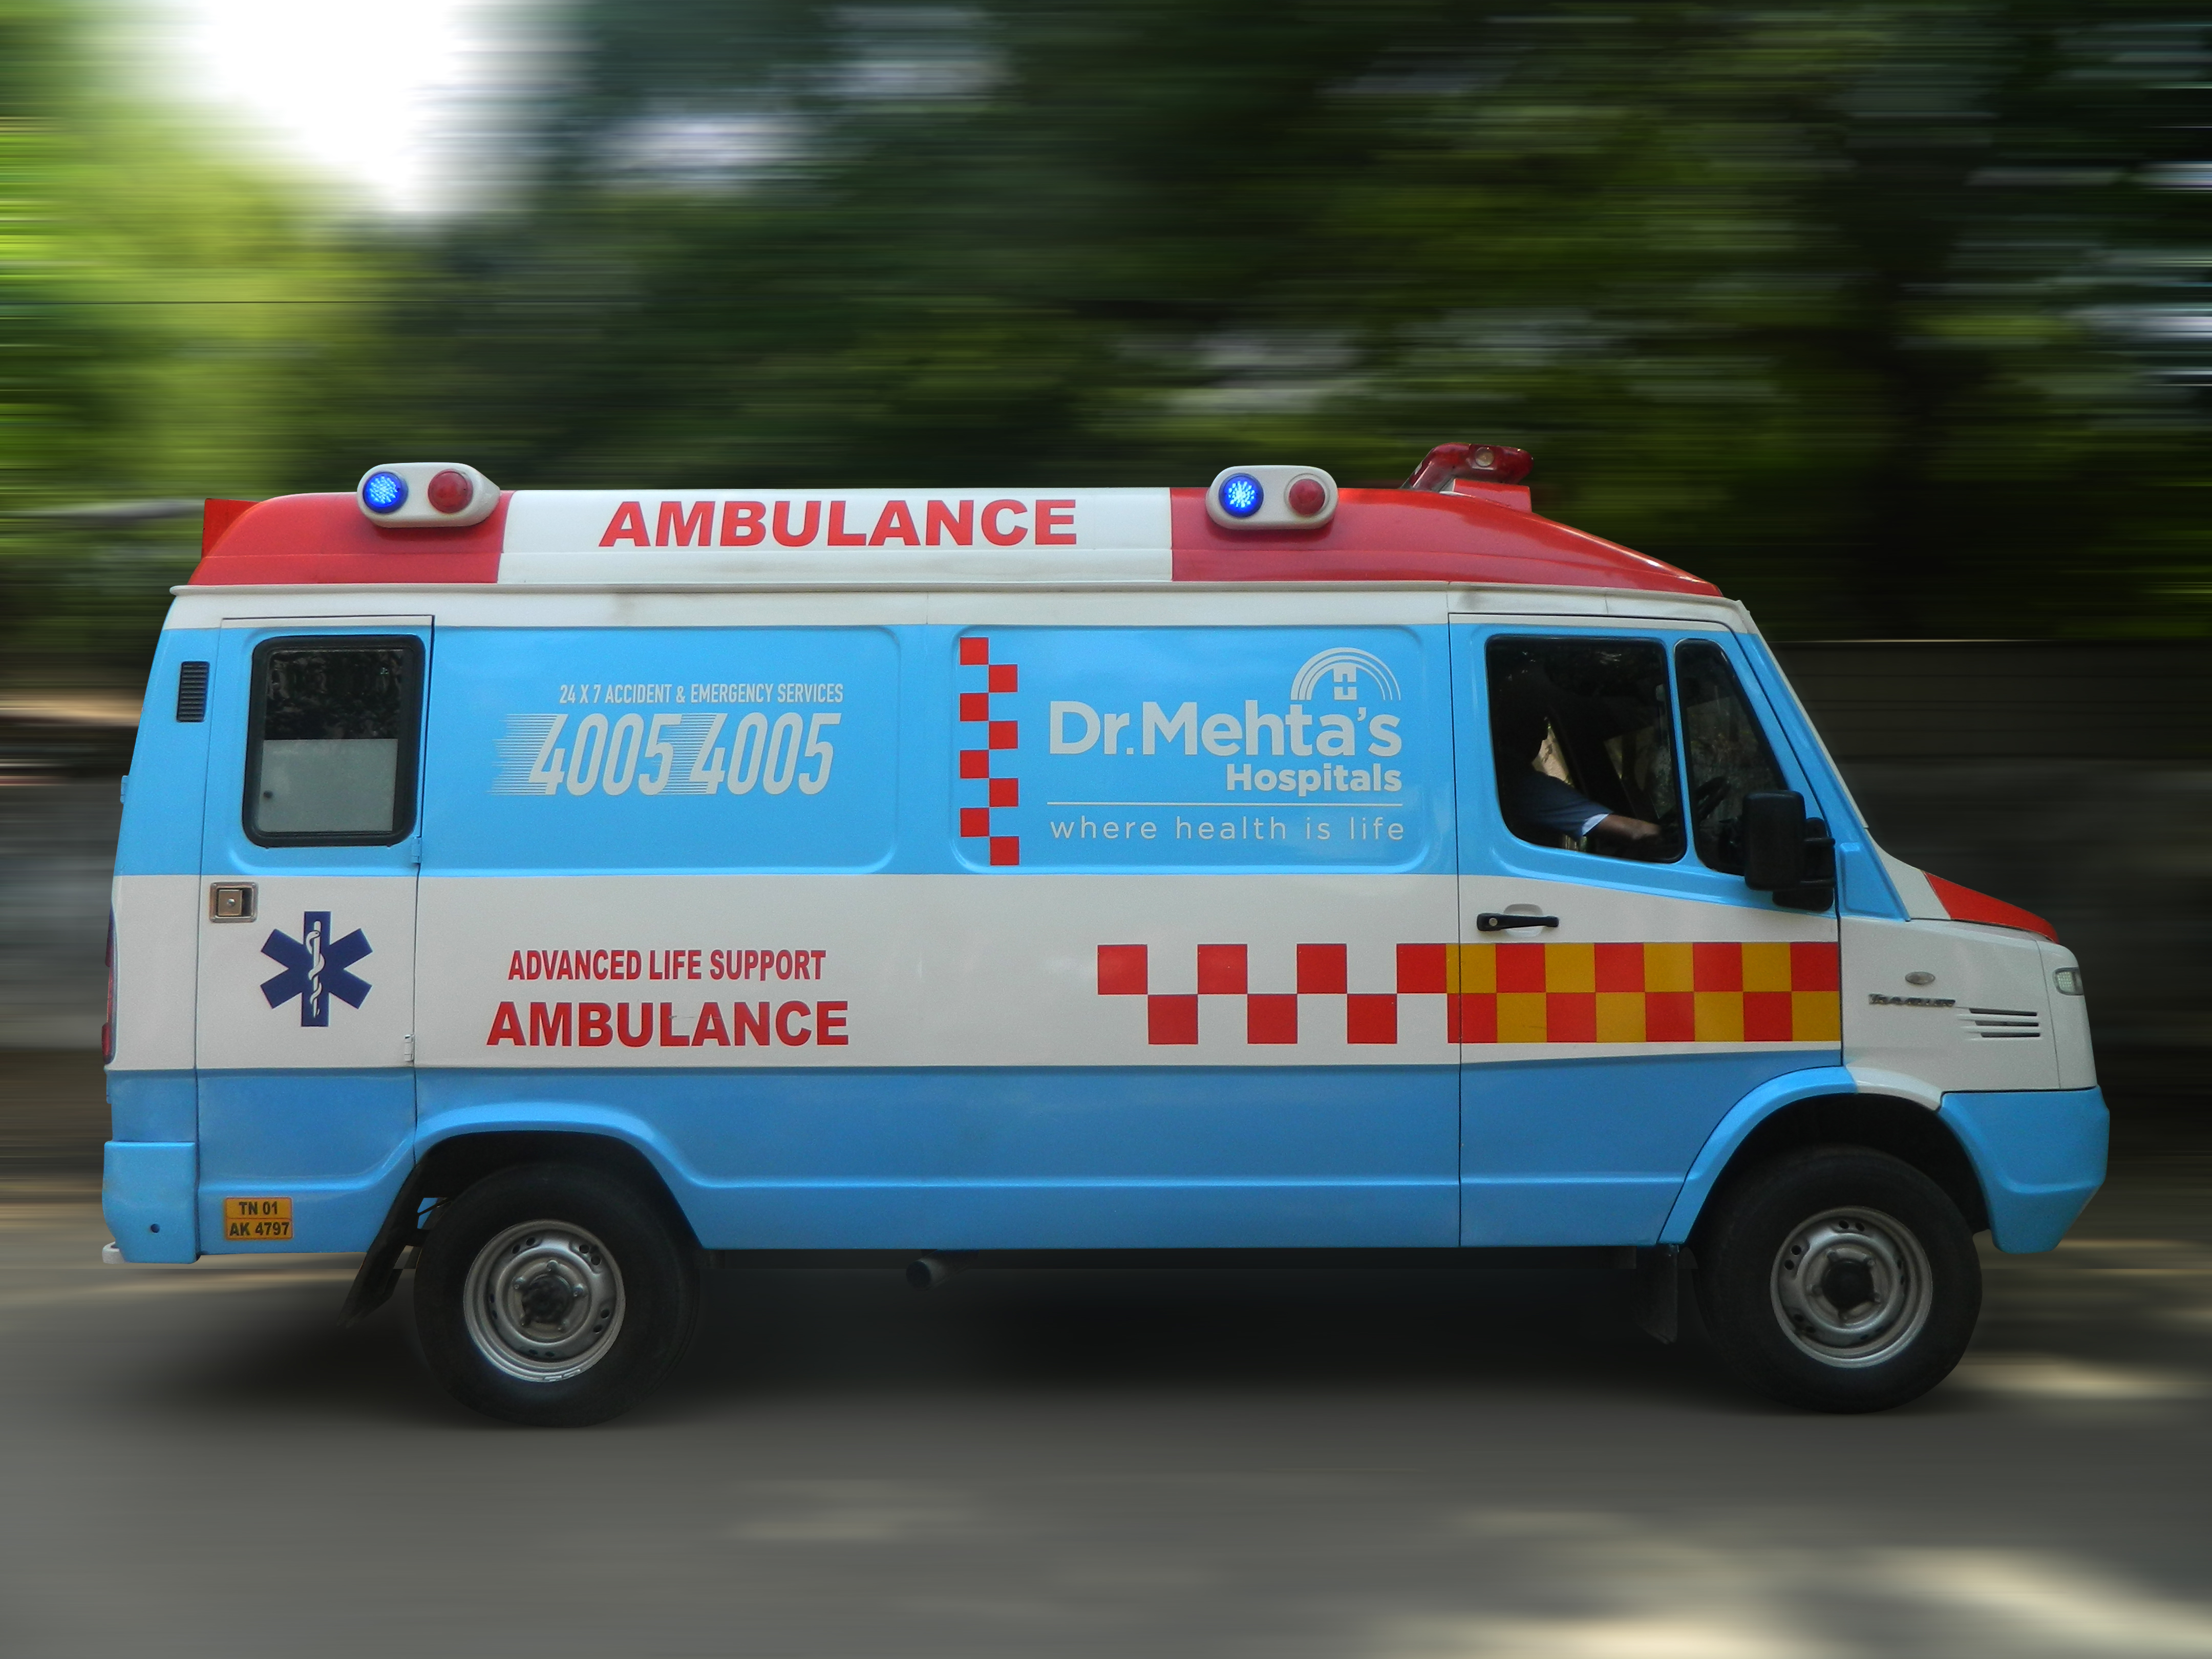 Ambulance - Dr.Mehta's Hospitals